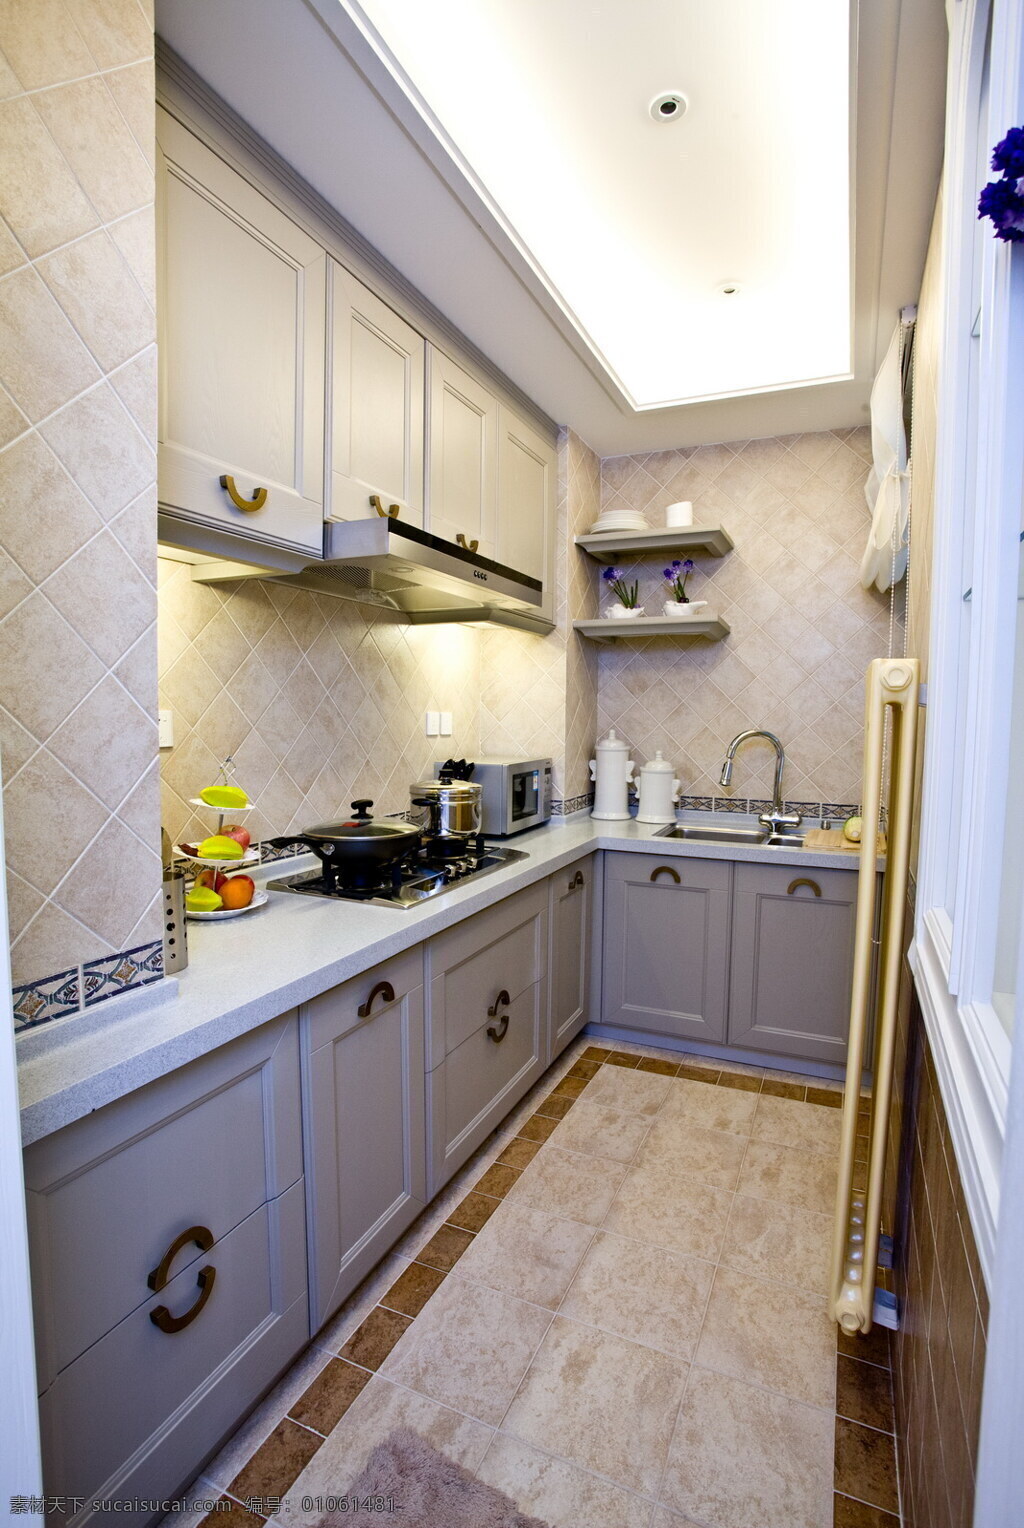 欧式 经典 时尚 厨房 装修 效果图 欧式经典 白色橱柜 高清大图